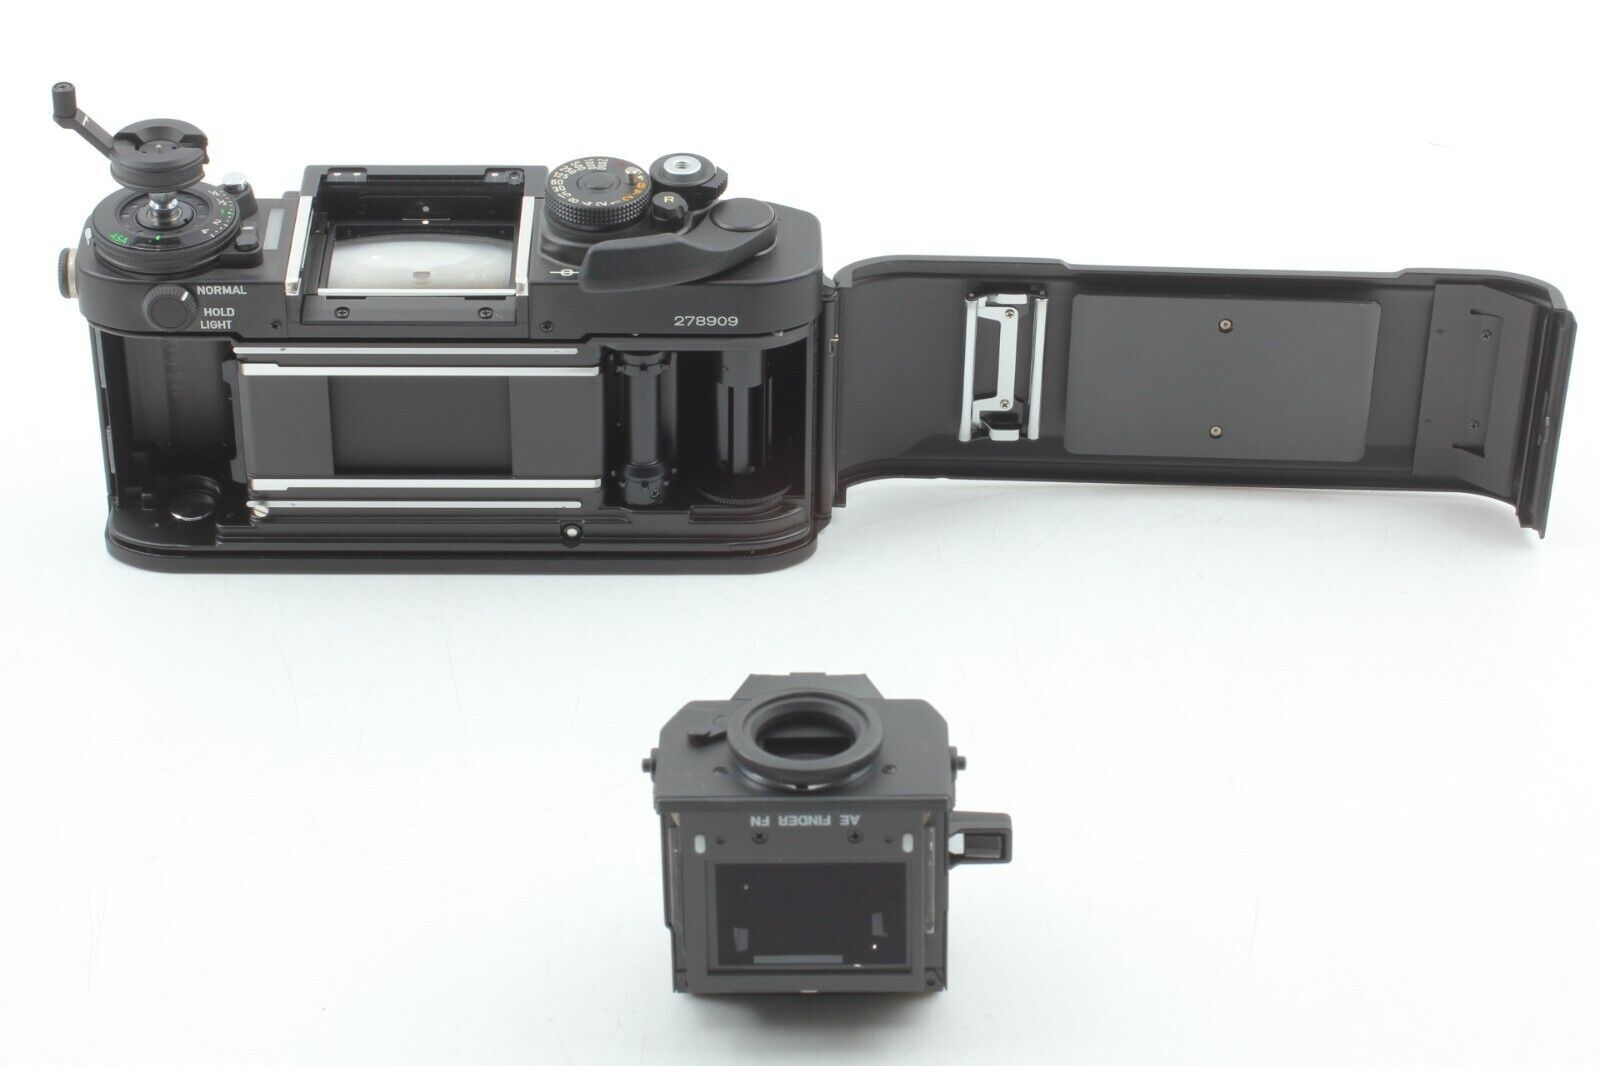 Canon F1, ultimul model, aparat pe film